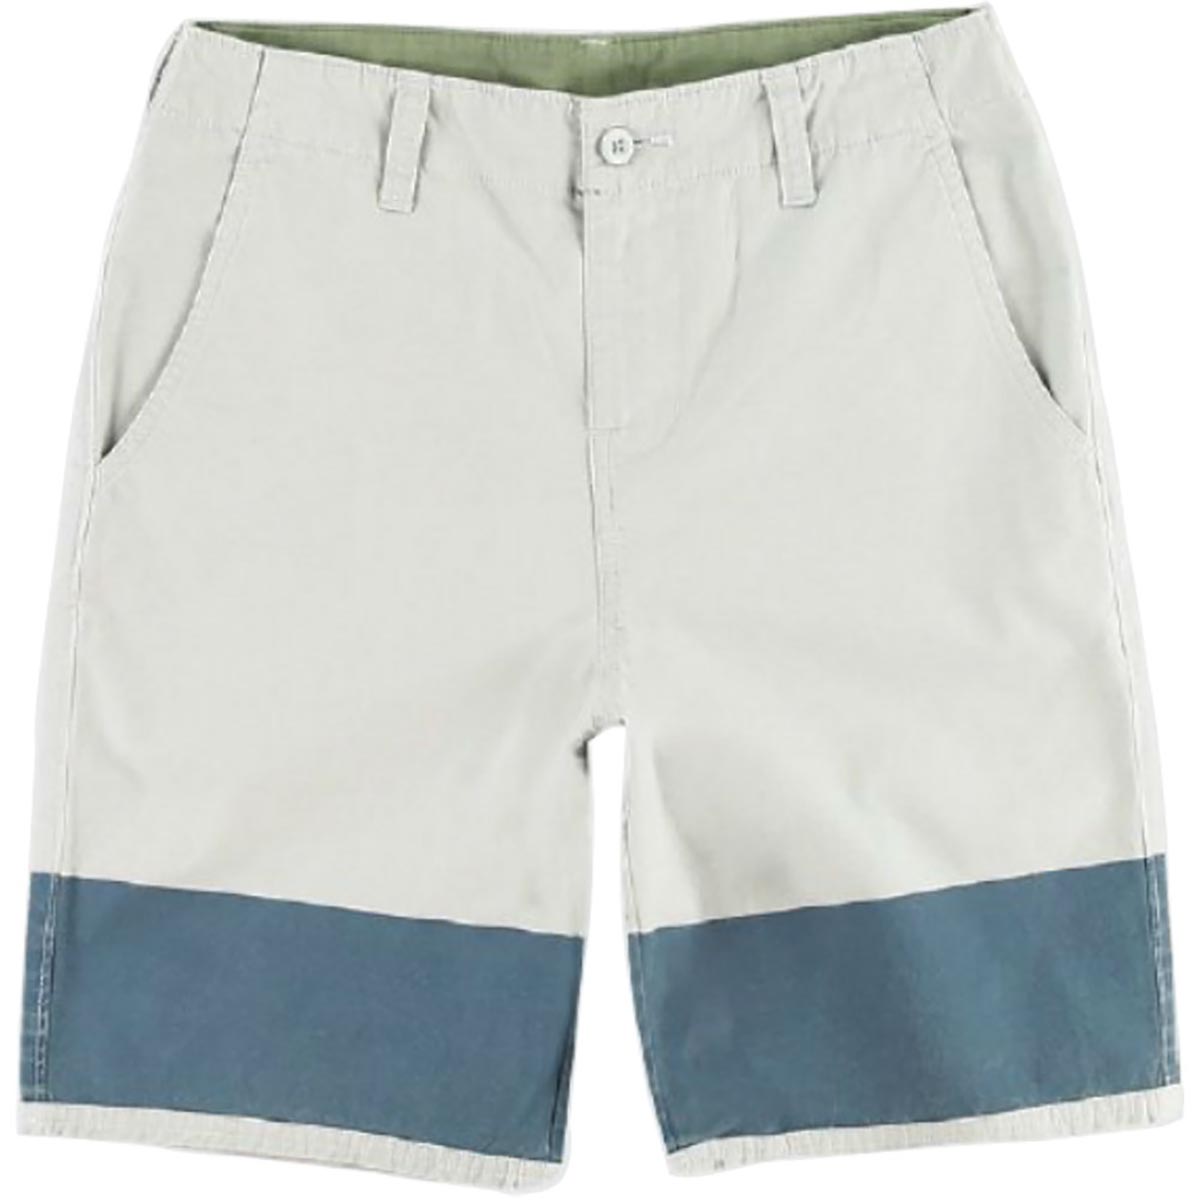 O'Neill Brooklyn Youth Boys Walkshort Shorts - Grey